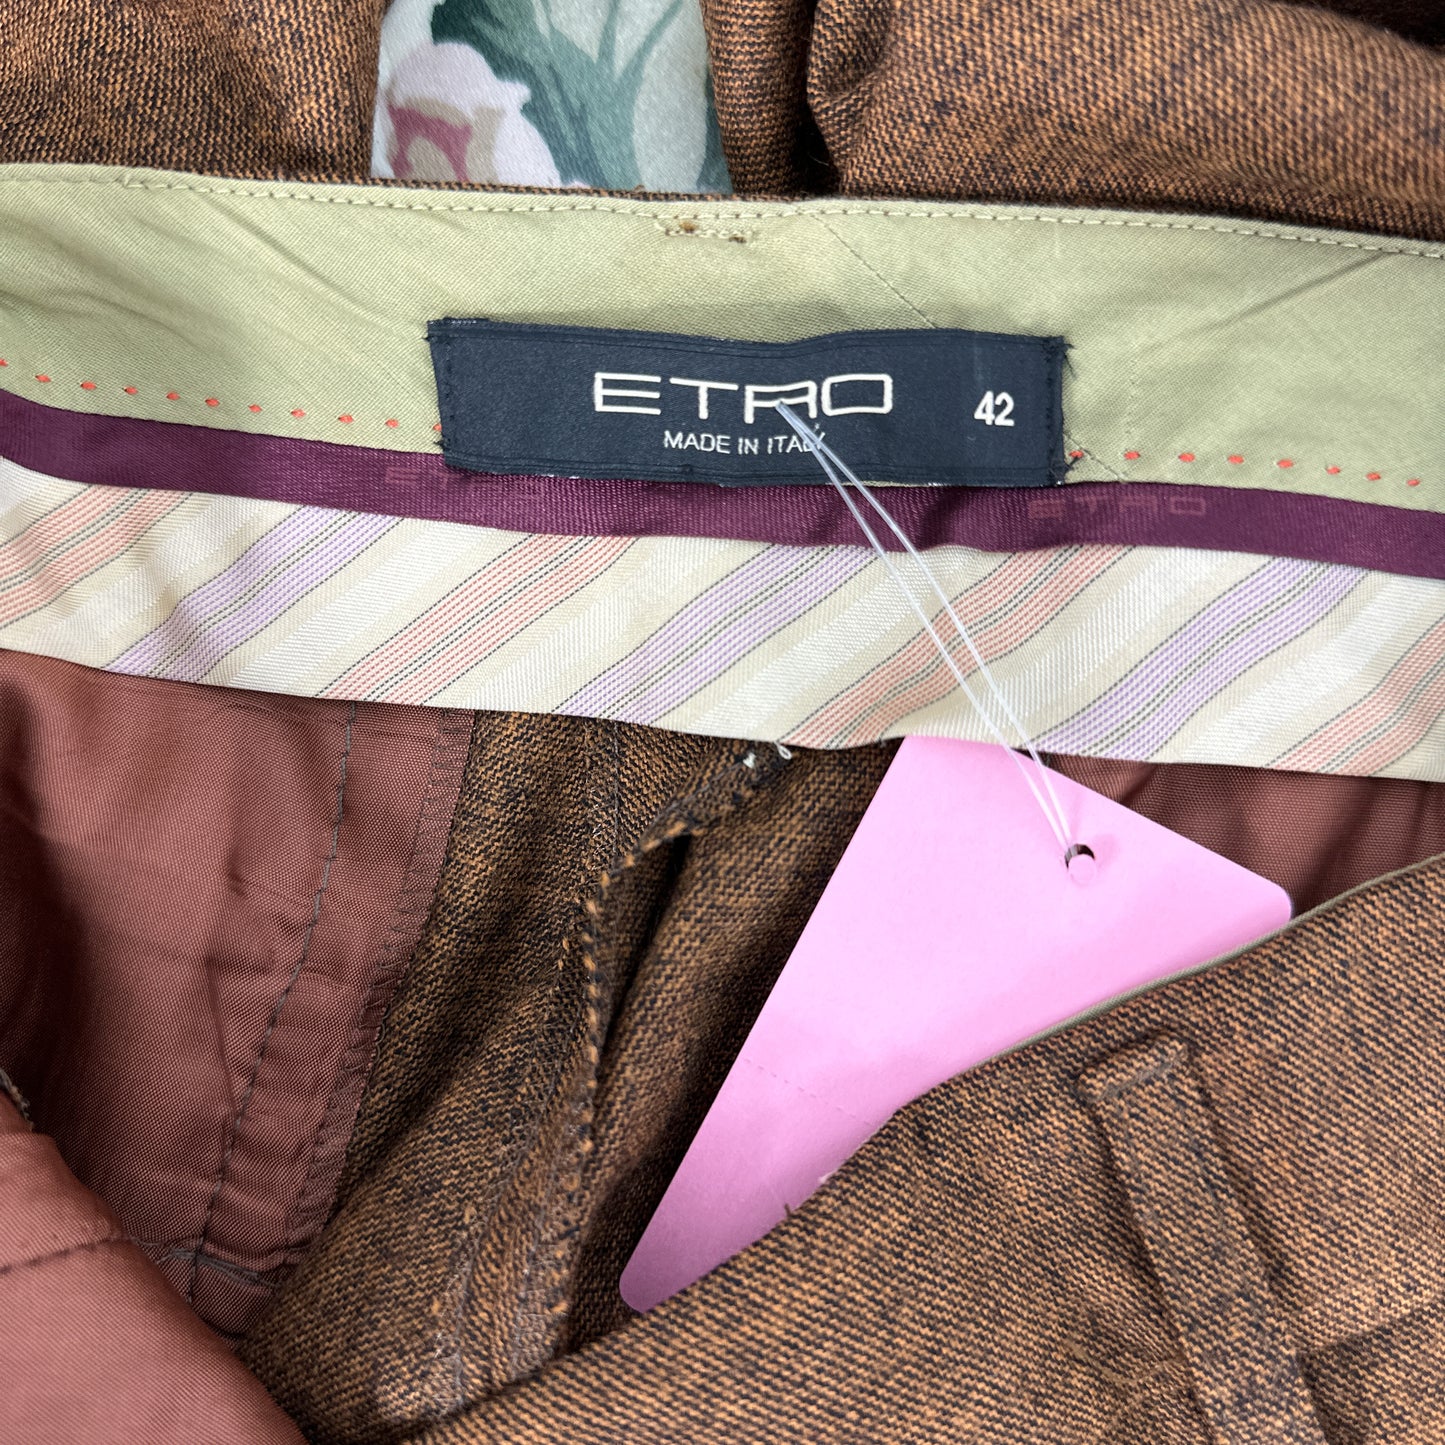 Etro | Brown Wool Blend Pants | IT 42 (US 8)